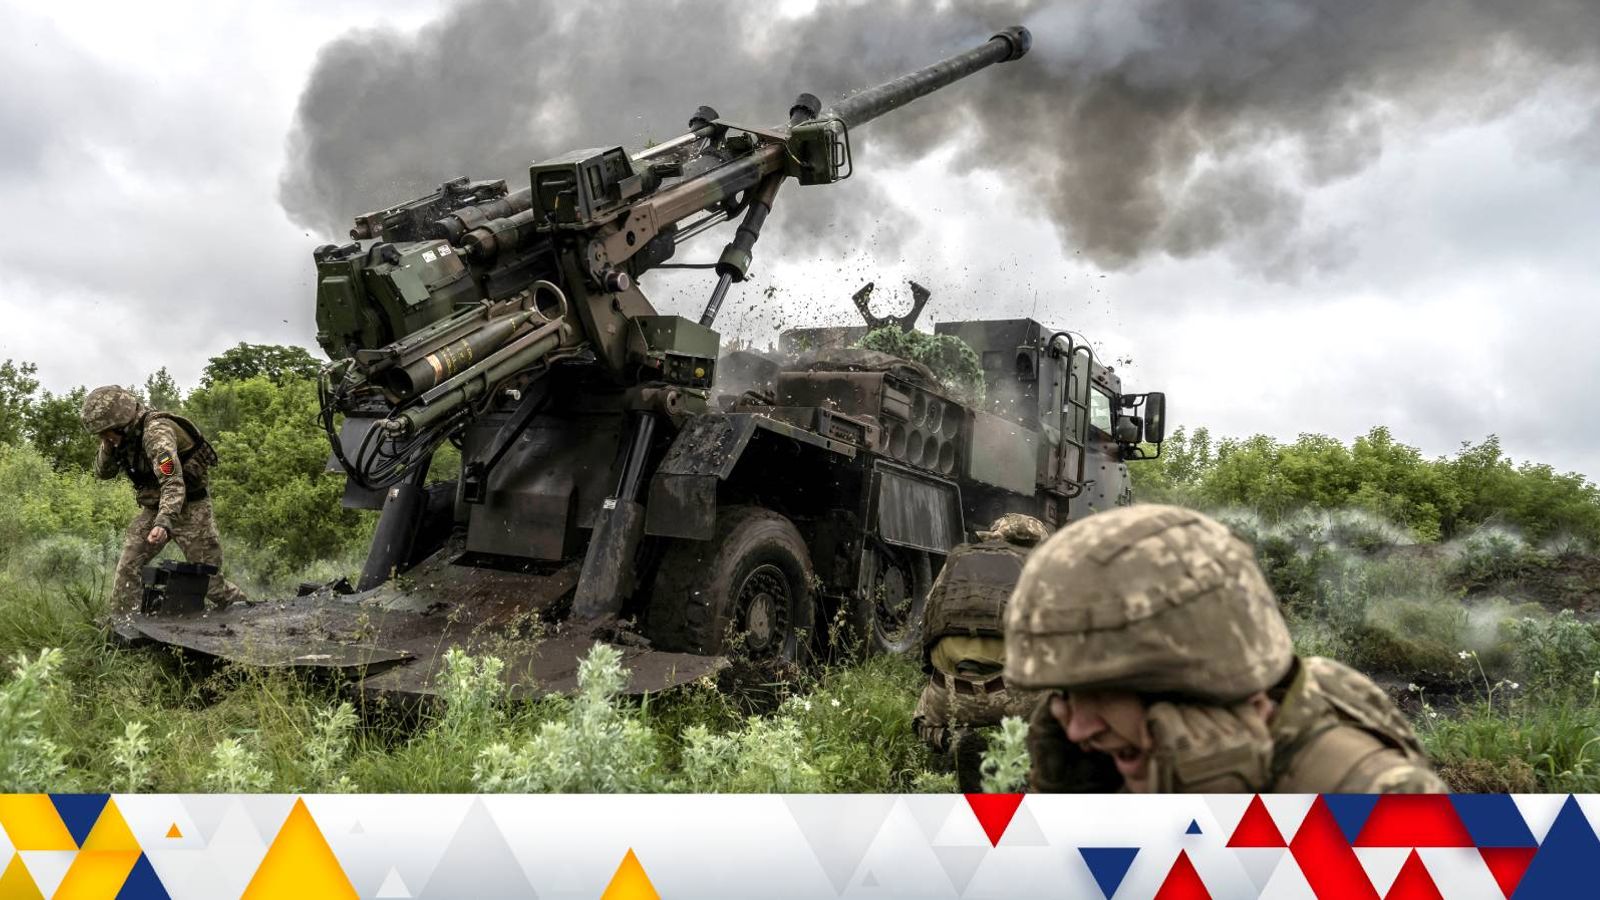 Последняя война на Украине: Зеленский готов начать контрнаступление – жесткое подавление рейдов показывает российскую «нервозность и неуверенность» |  Мировые новости